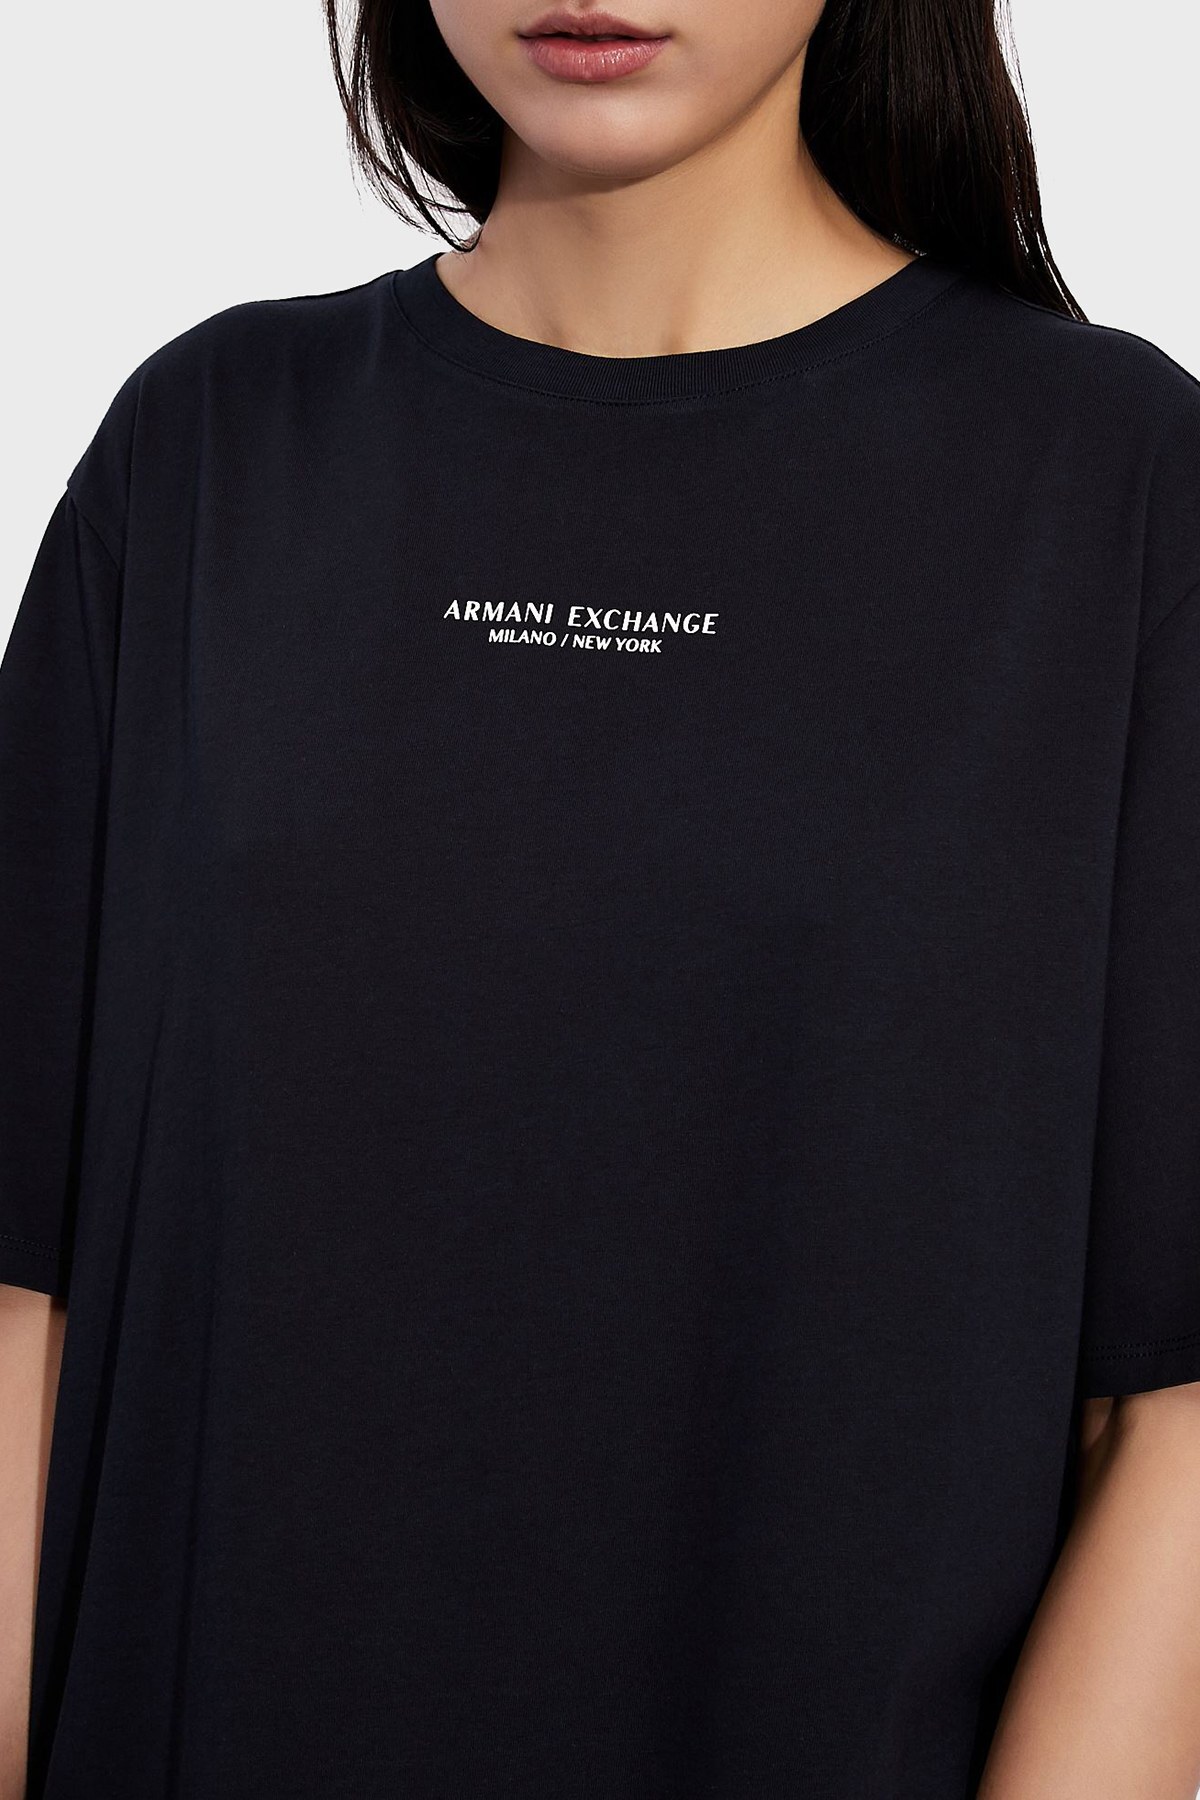 Armani Exchange Pamuklu Yırtmaçlı Regular Fit Midi T-shirt Bayan Elbise 8NYACF YJG3Z 1510 LACİVERT